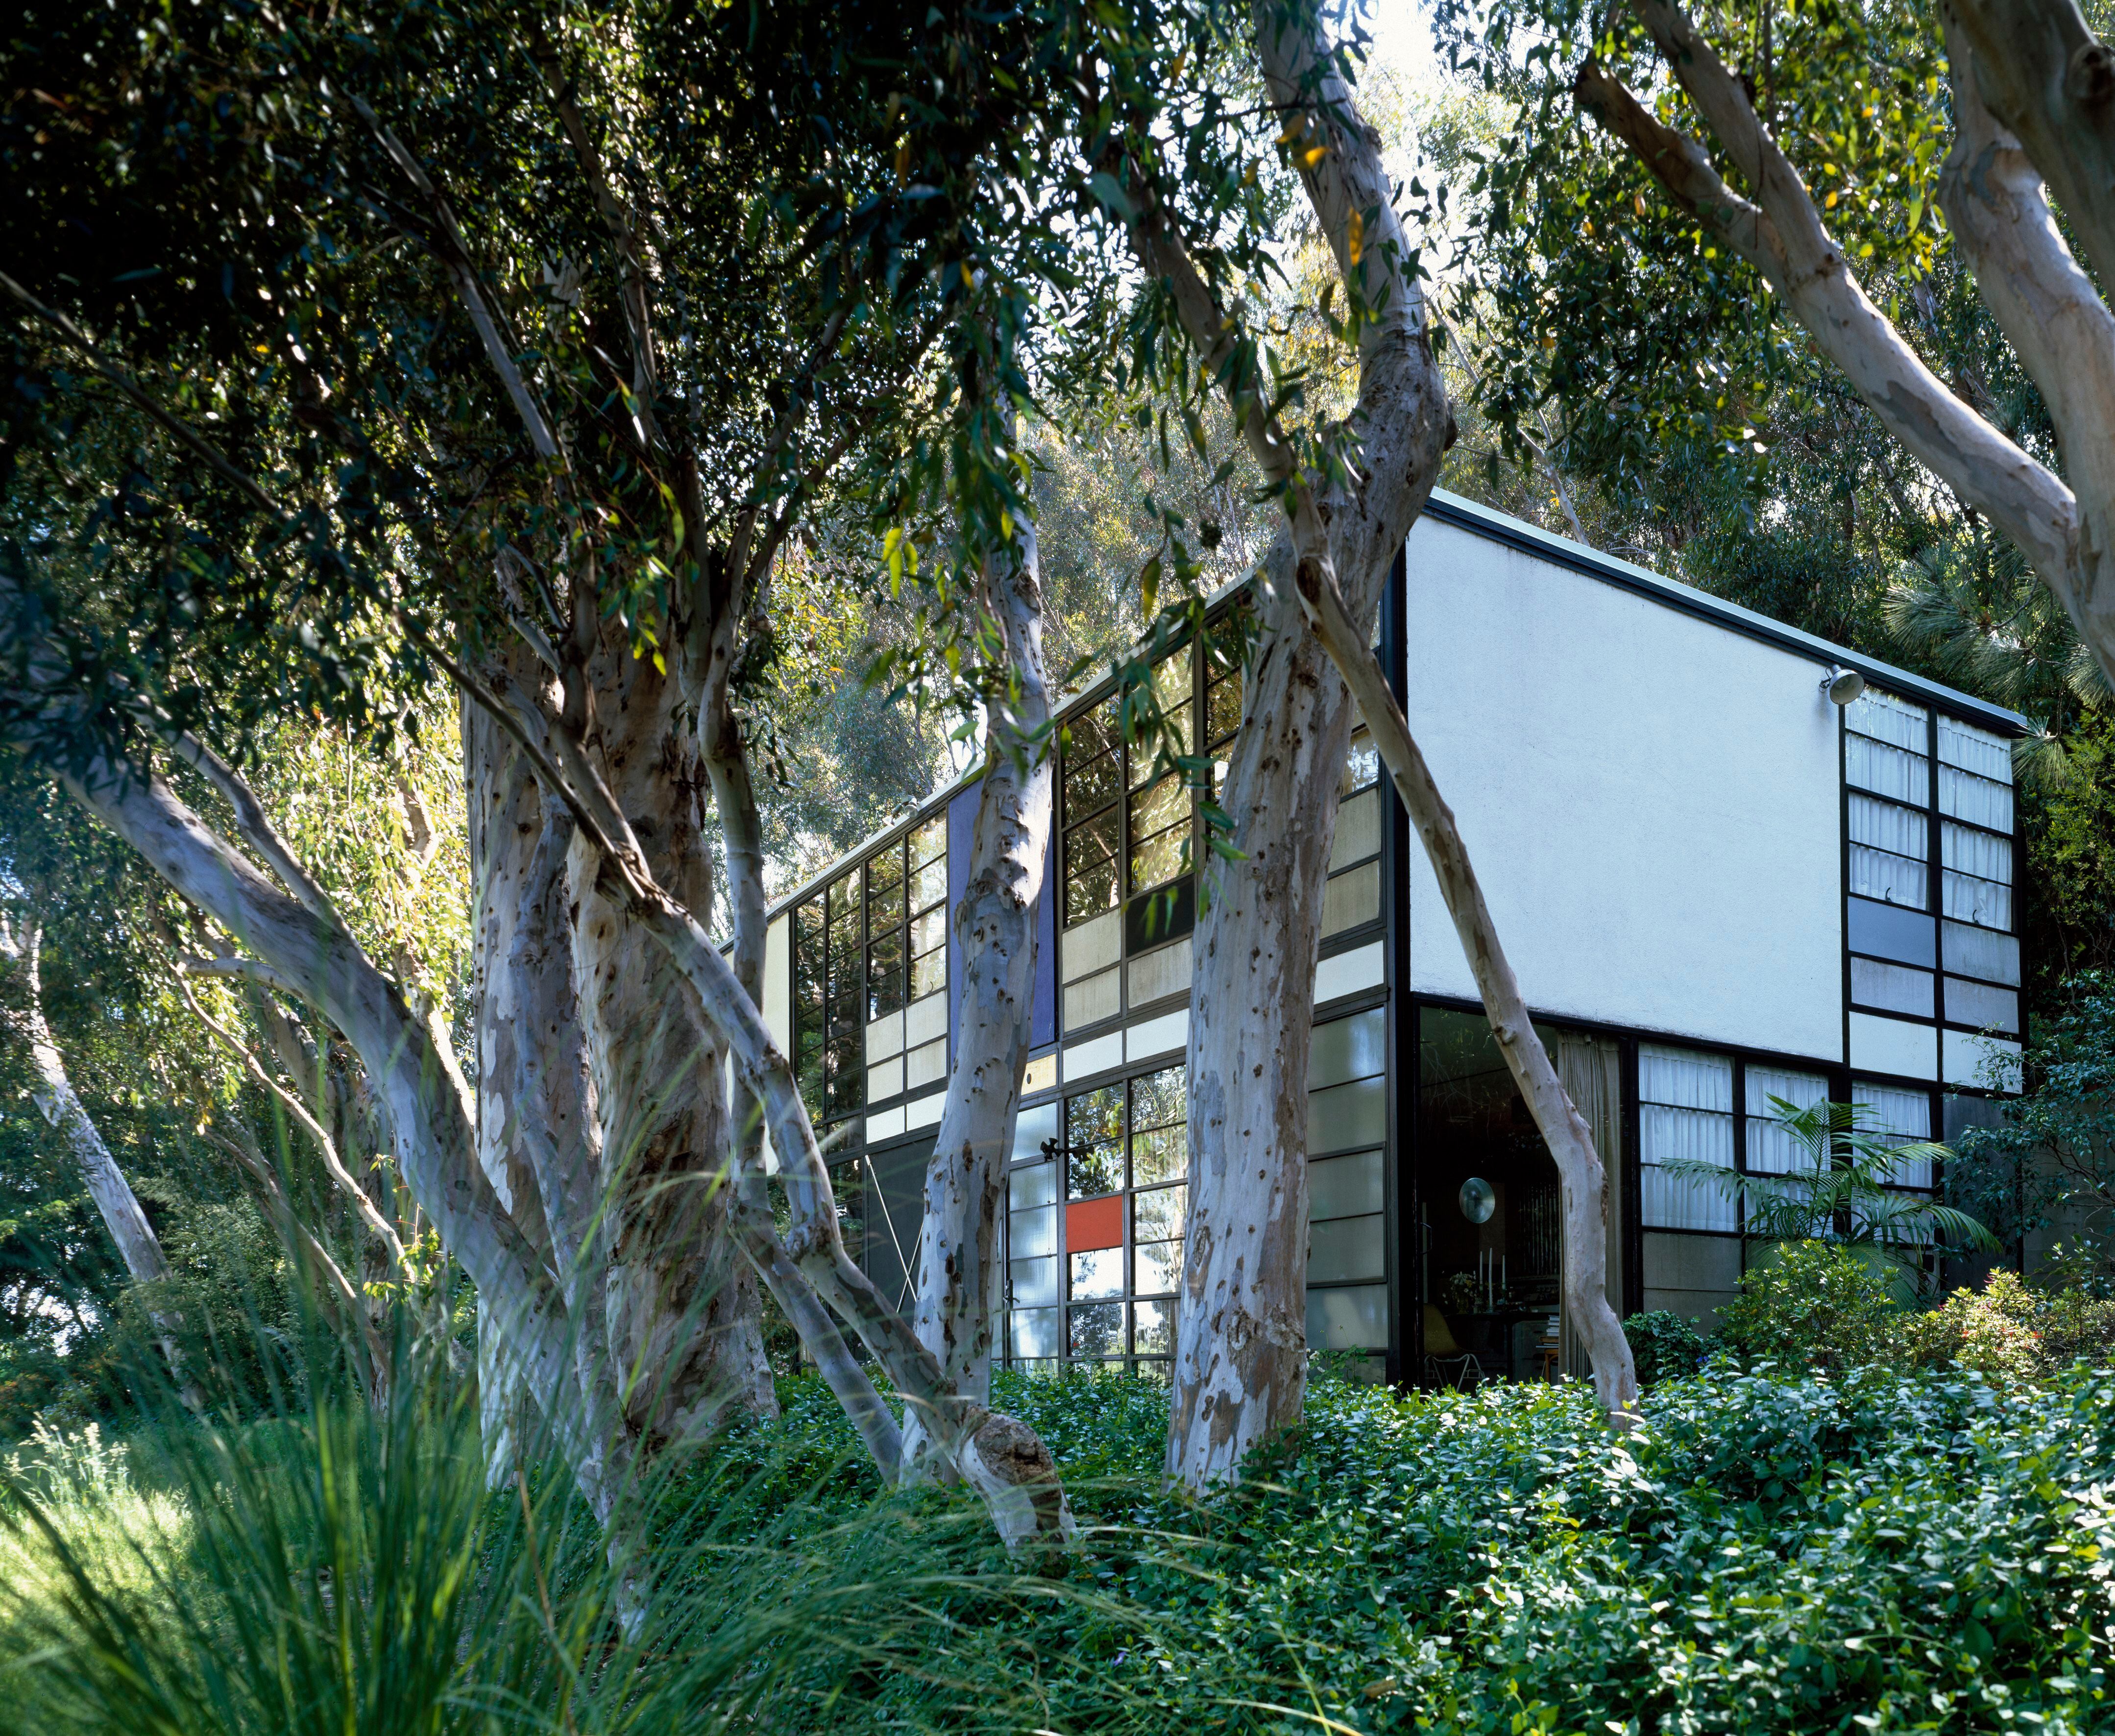 Las Case Study Houses californianas, como la Eames House de la foto, nacieron con la idea de fabricar en serie modelos que se ensamblarían de manera rápida.